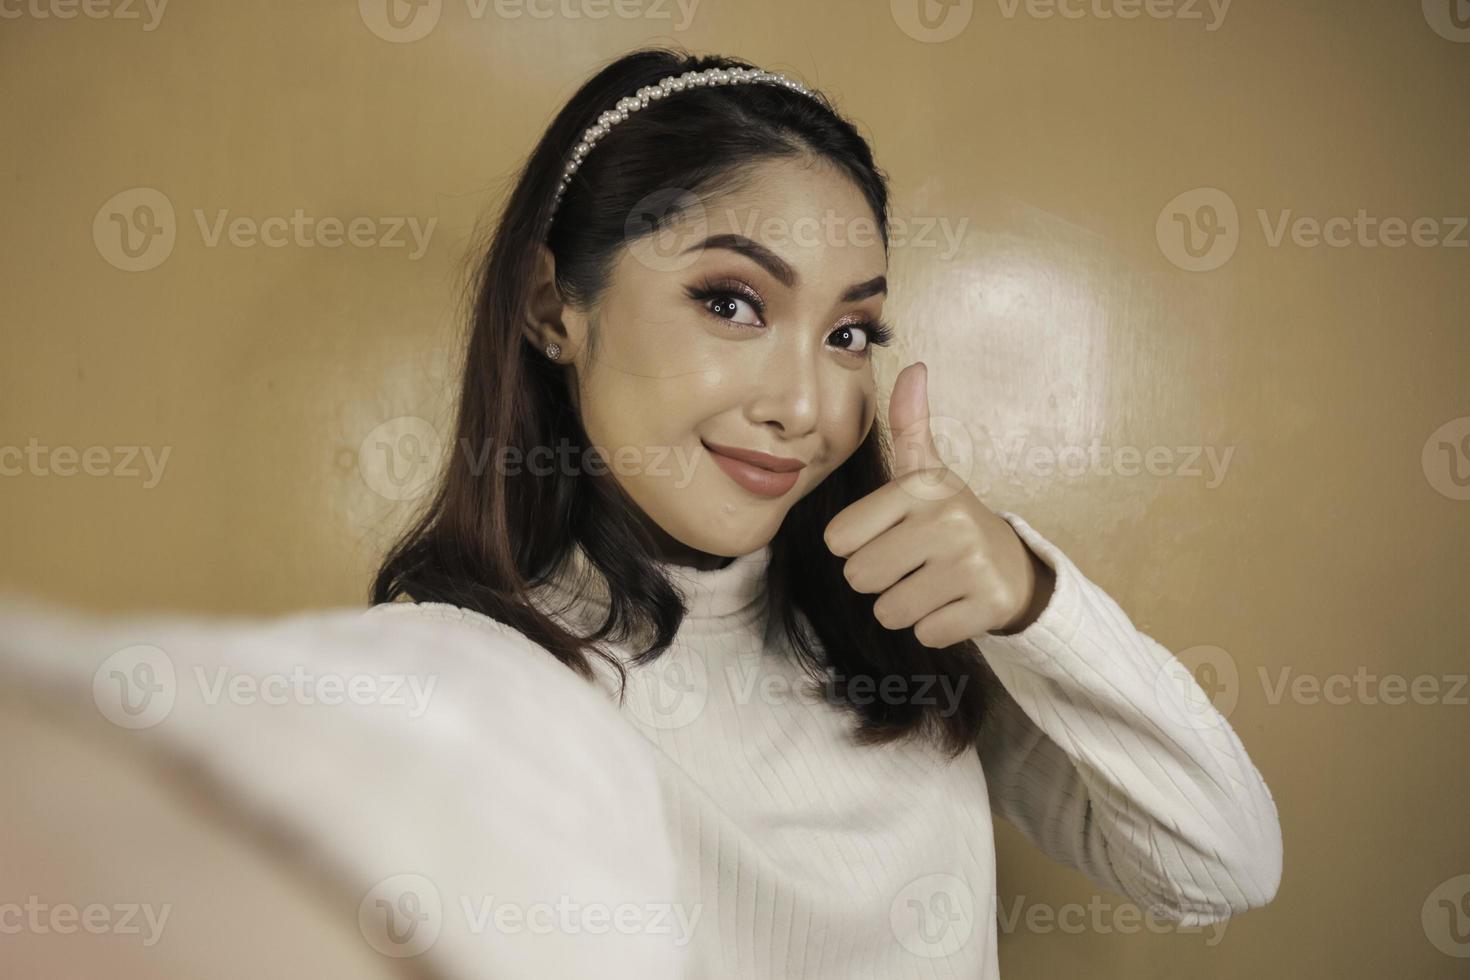 jeune femme asiatique est selfie avec un visage souriant heureux et signe ok près de la bouche regarde la caméra photo